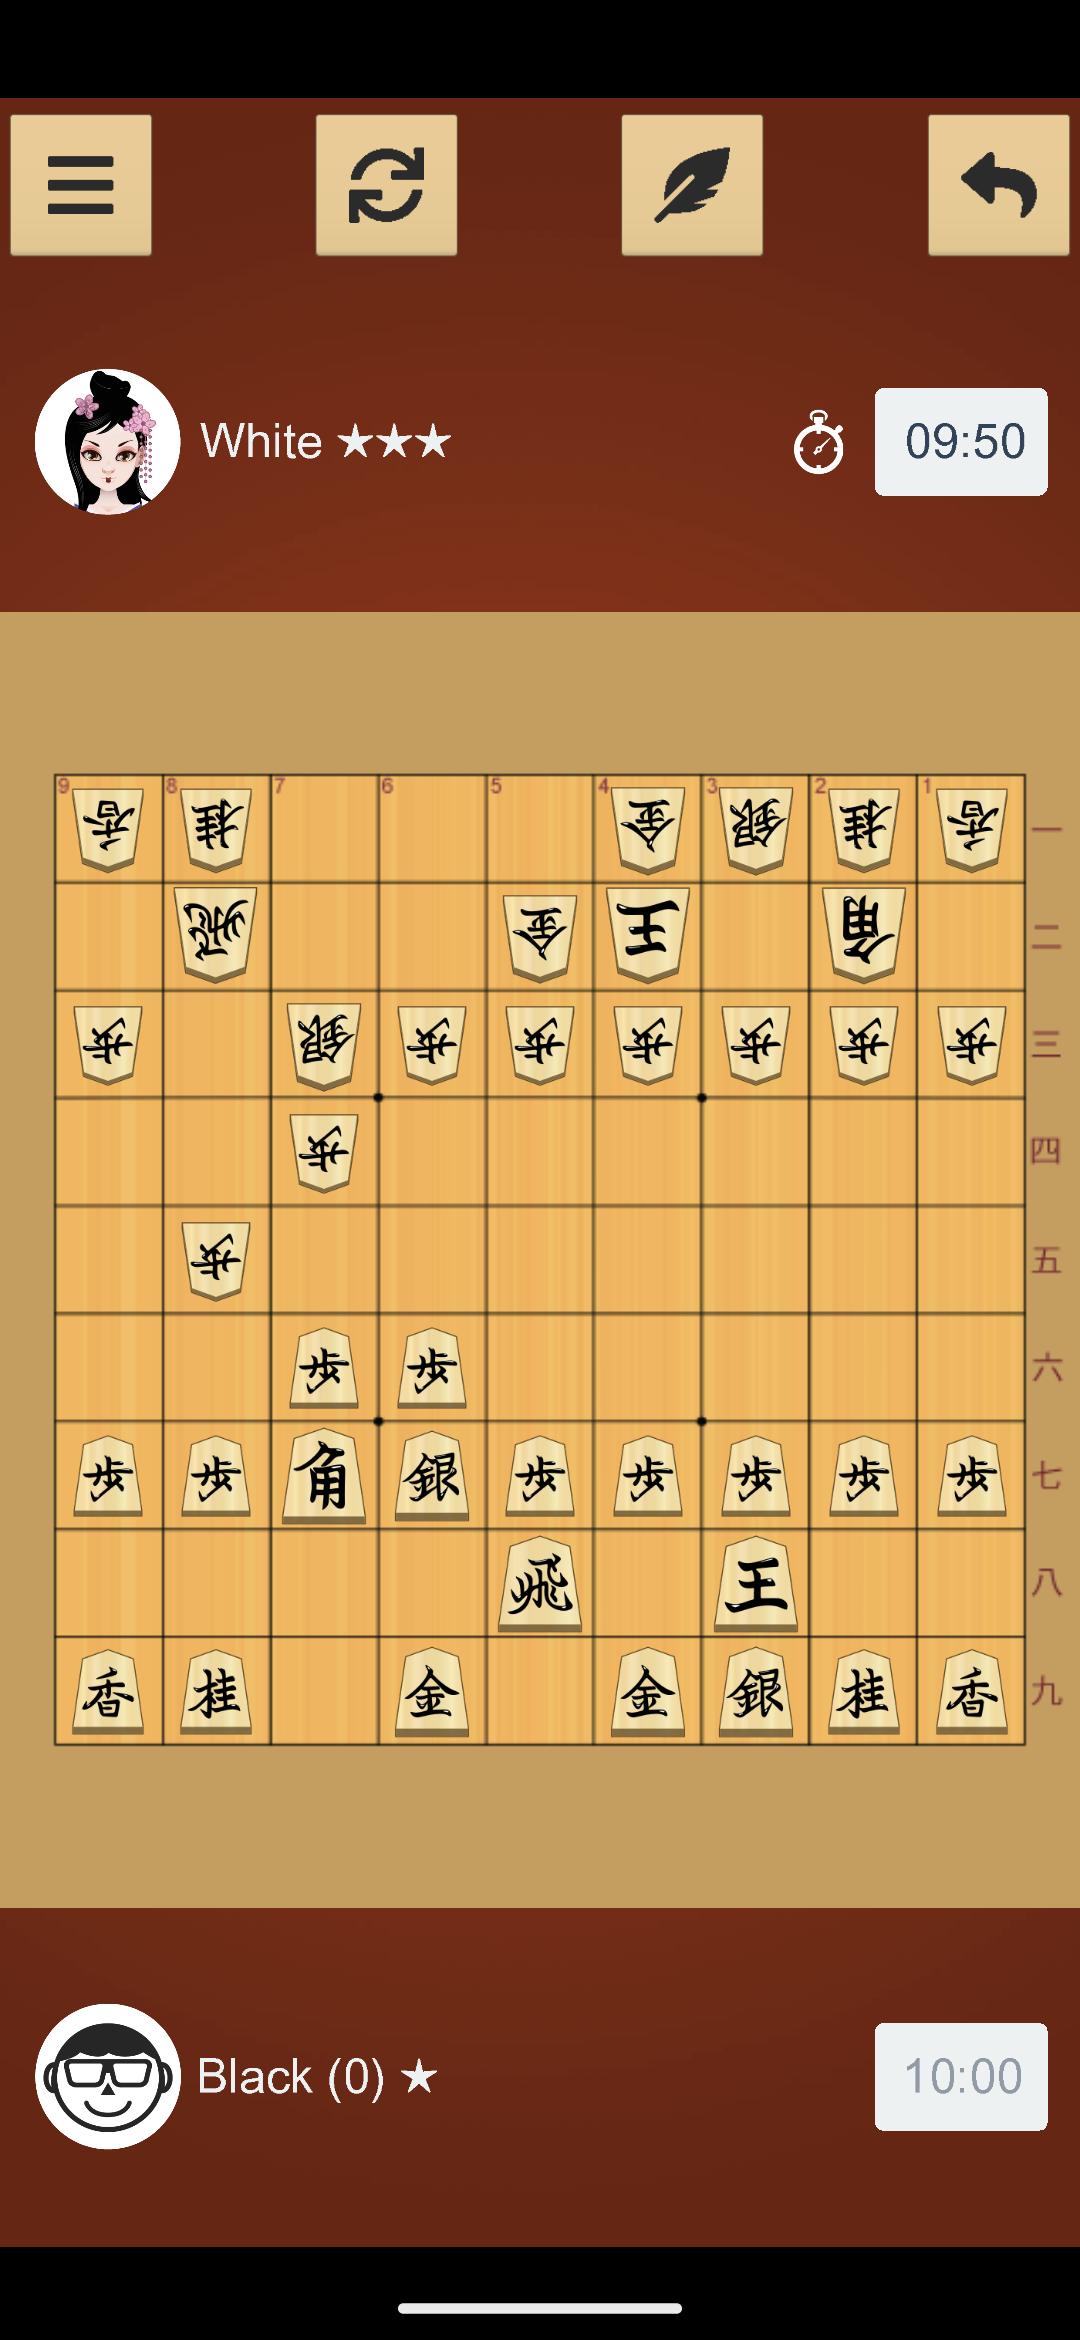 Tải game cờ Shogi: Bạn là một người yêu thích chơi game và muốn thử sức với game cờ Shogi nhưng không biết tải ở đâu? Chúng tôi sẽ giúp bạn! Hãy truy cập vào hình ảnh để tải game cờ Shogi miễn phí và trải nghiệm thử thách logic tinh tế mới lạ của trò chơi này.